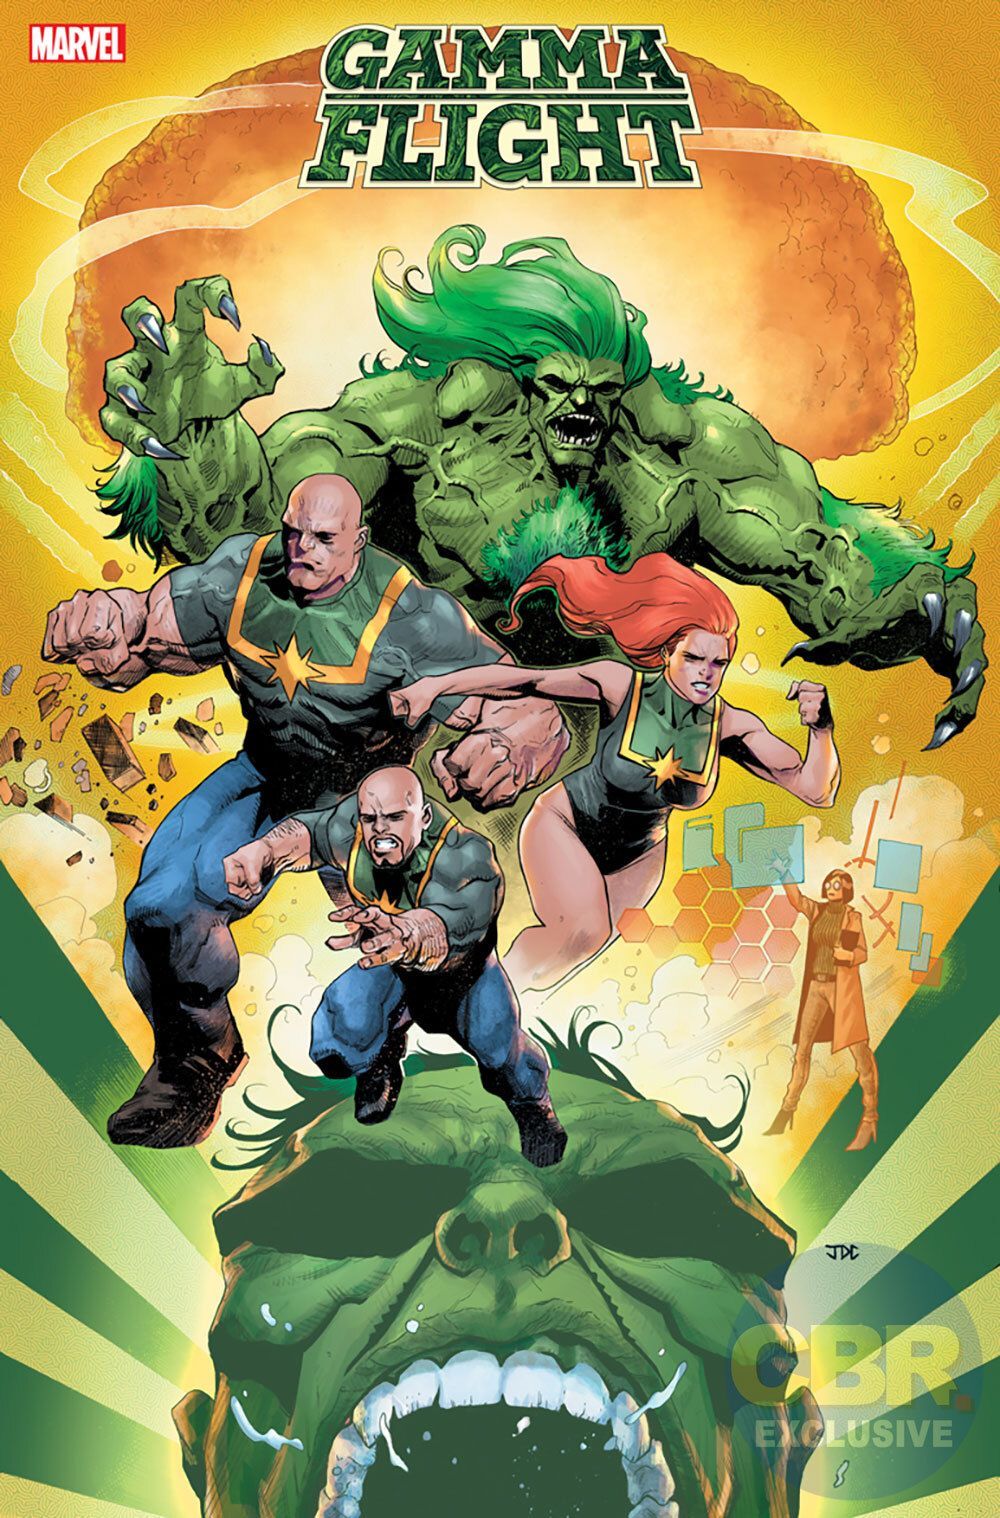 Naslovna različica leta Gama pošlje eksplozivne zaveznike Hulka v beg (ekskluzivno)